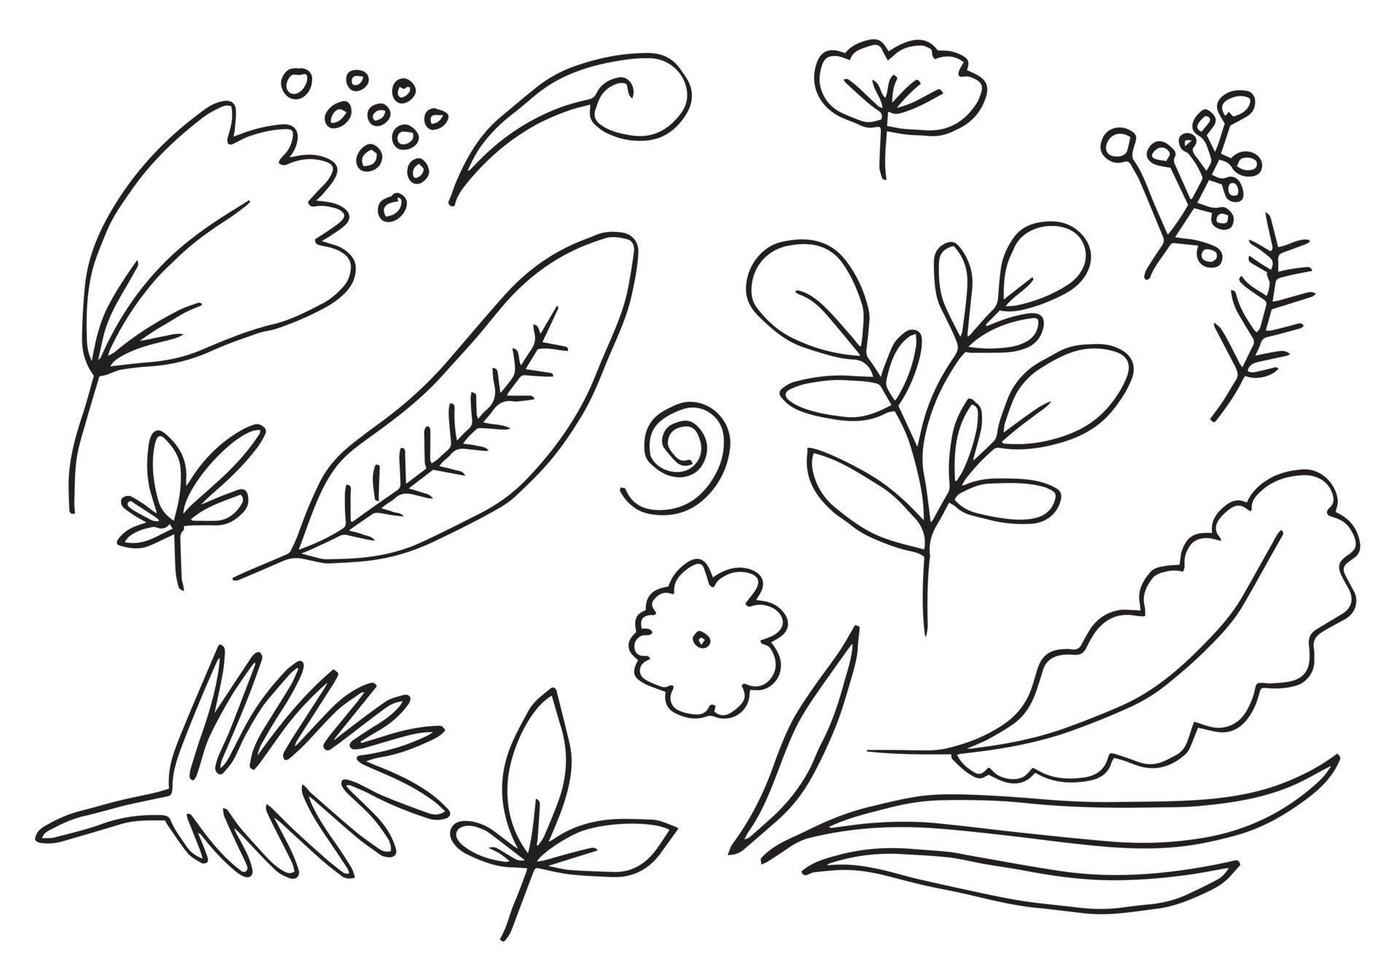 una colección de imágenes de flores dibujadas a mano, como campanillas, crisantemos, girasoles, flores de algodón y hojas tropicales vector